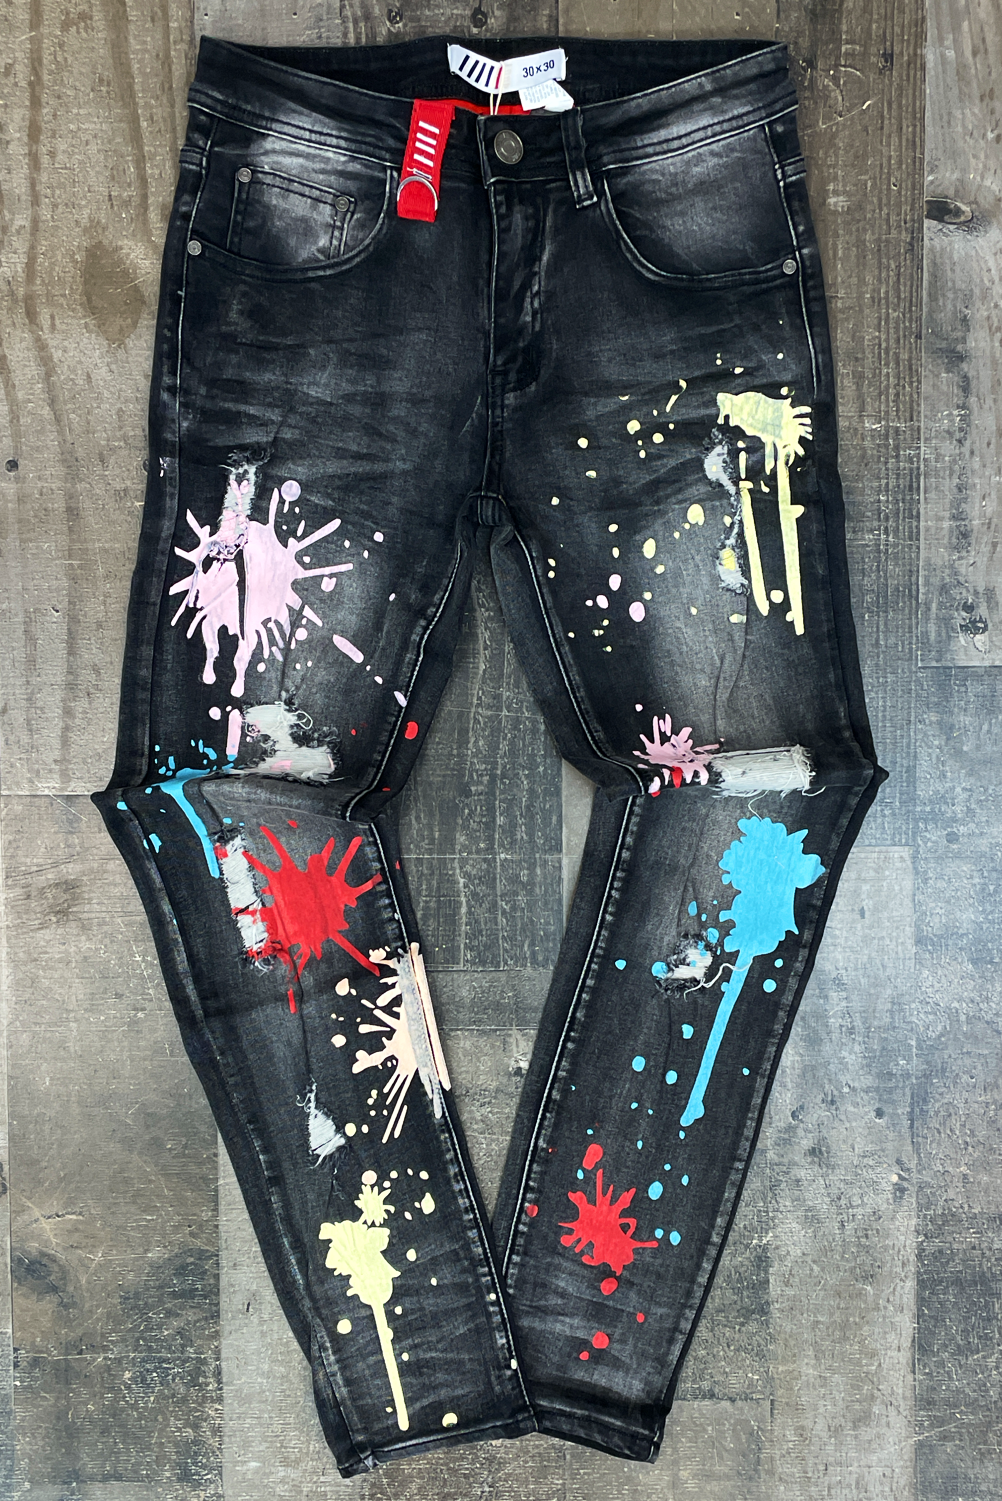 Fifth Loop- splash painting ripped denim jeans